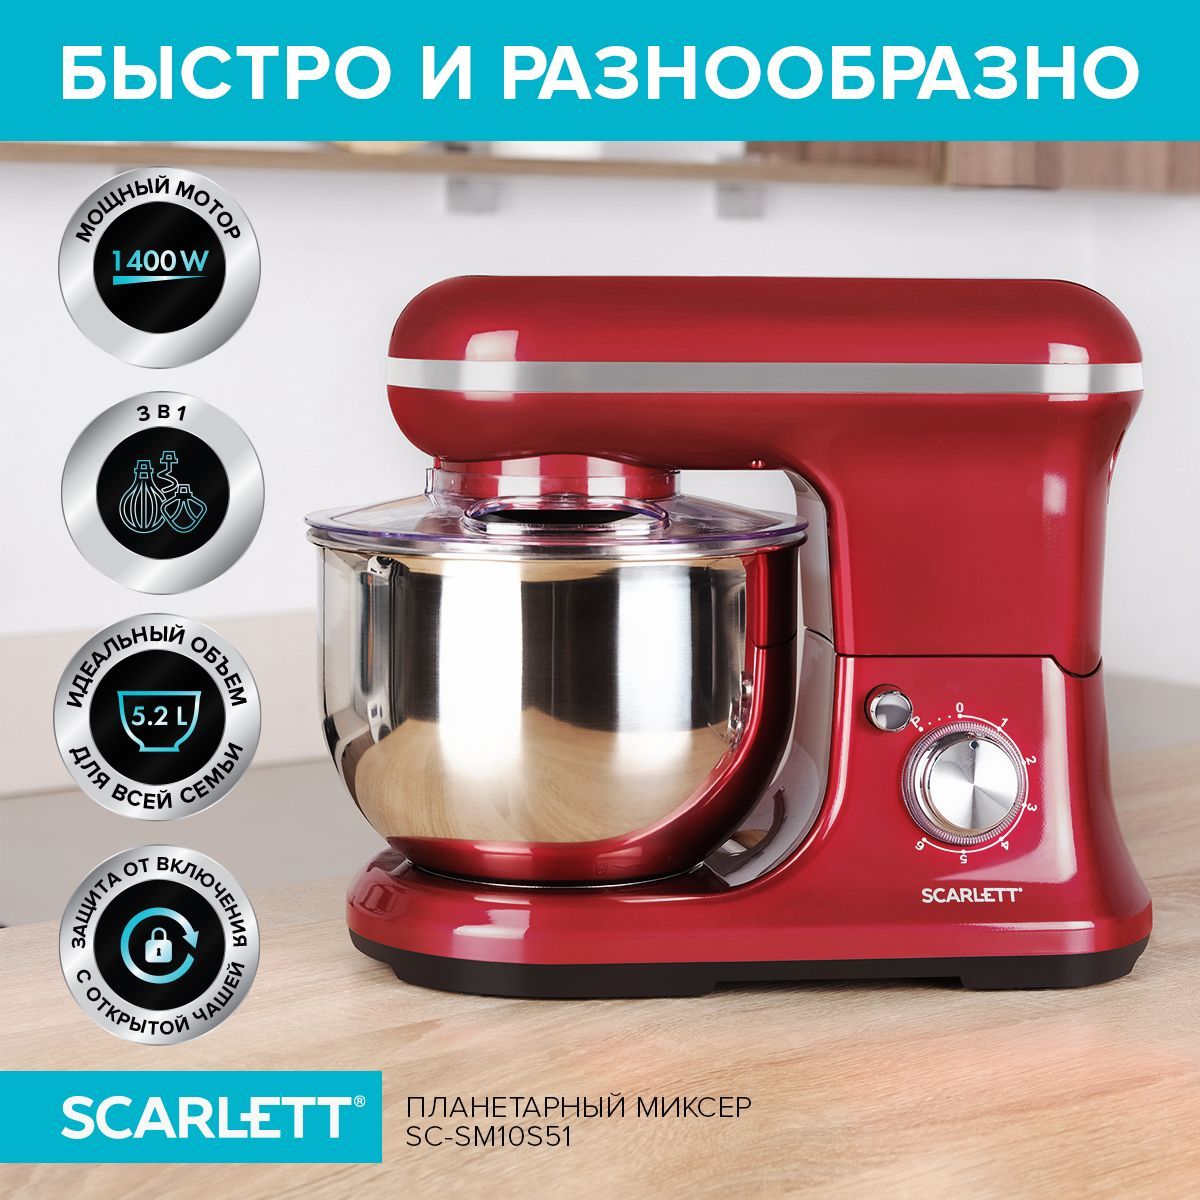 ScarlettПланетарныймиксерSC-SM10S51,1400Вт